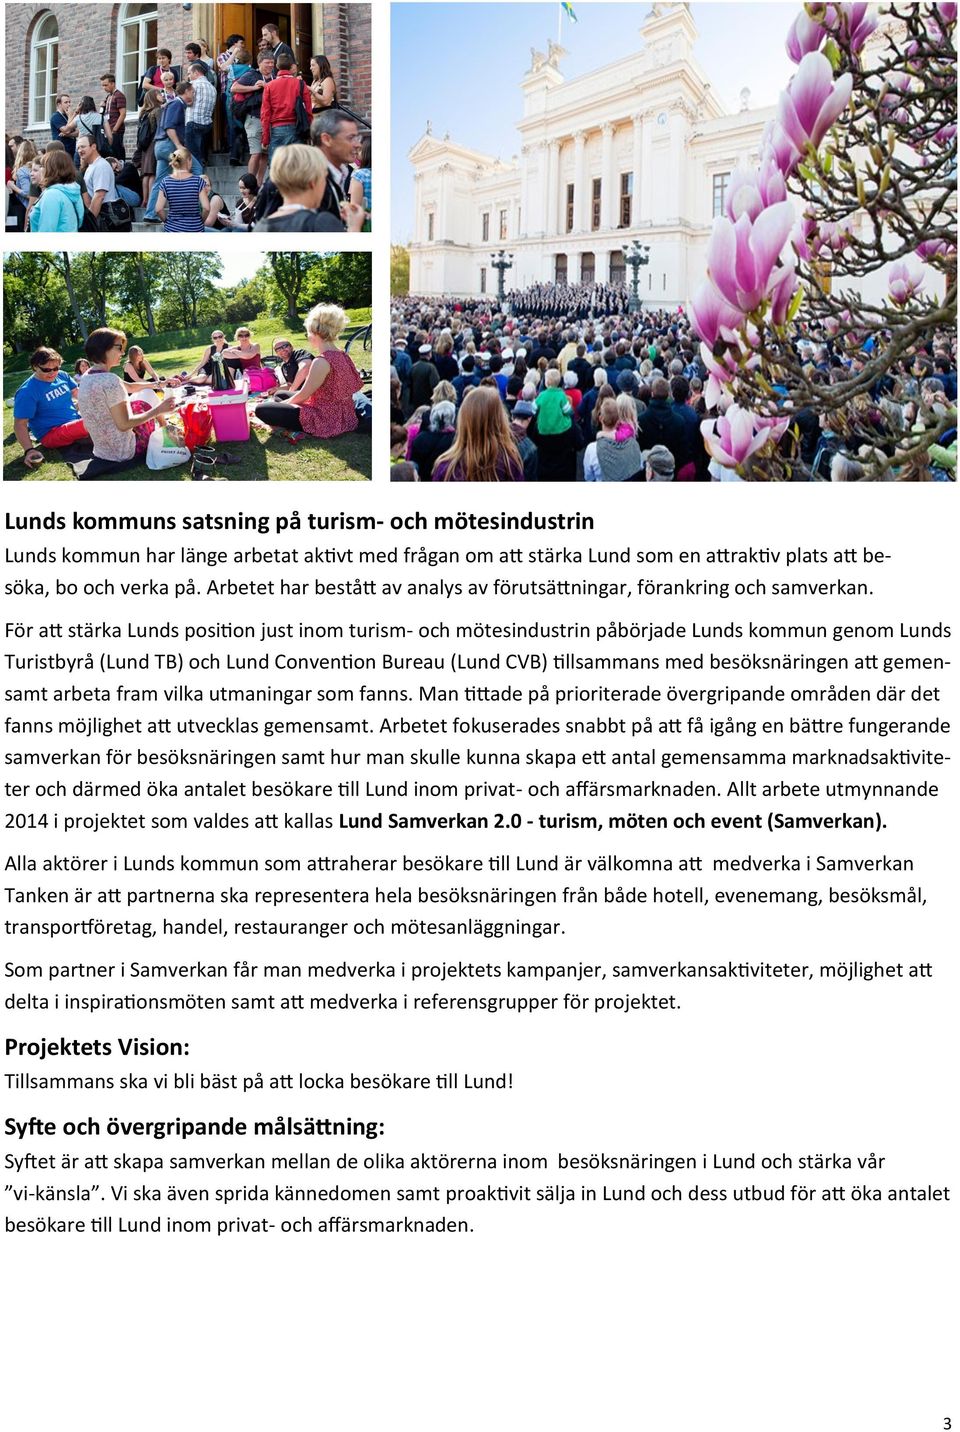 För att stärka Lunds position just inom turism- och mötesindustrin påbörjade Lunds kommun genom Lunds Turistbyrå (Lund TB) och Lund Convention Bureau (Lund CVB) tillsammans med besöksnäringen att